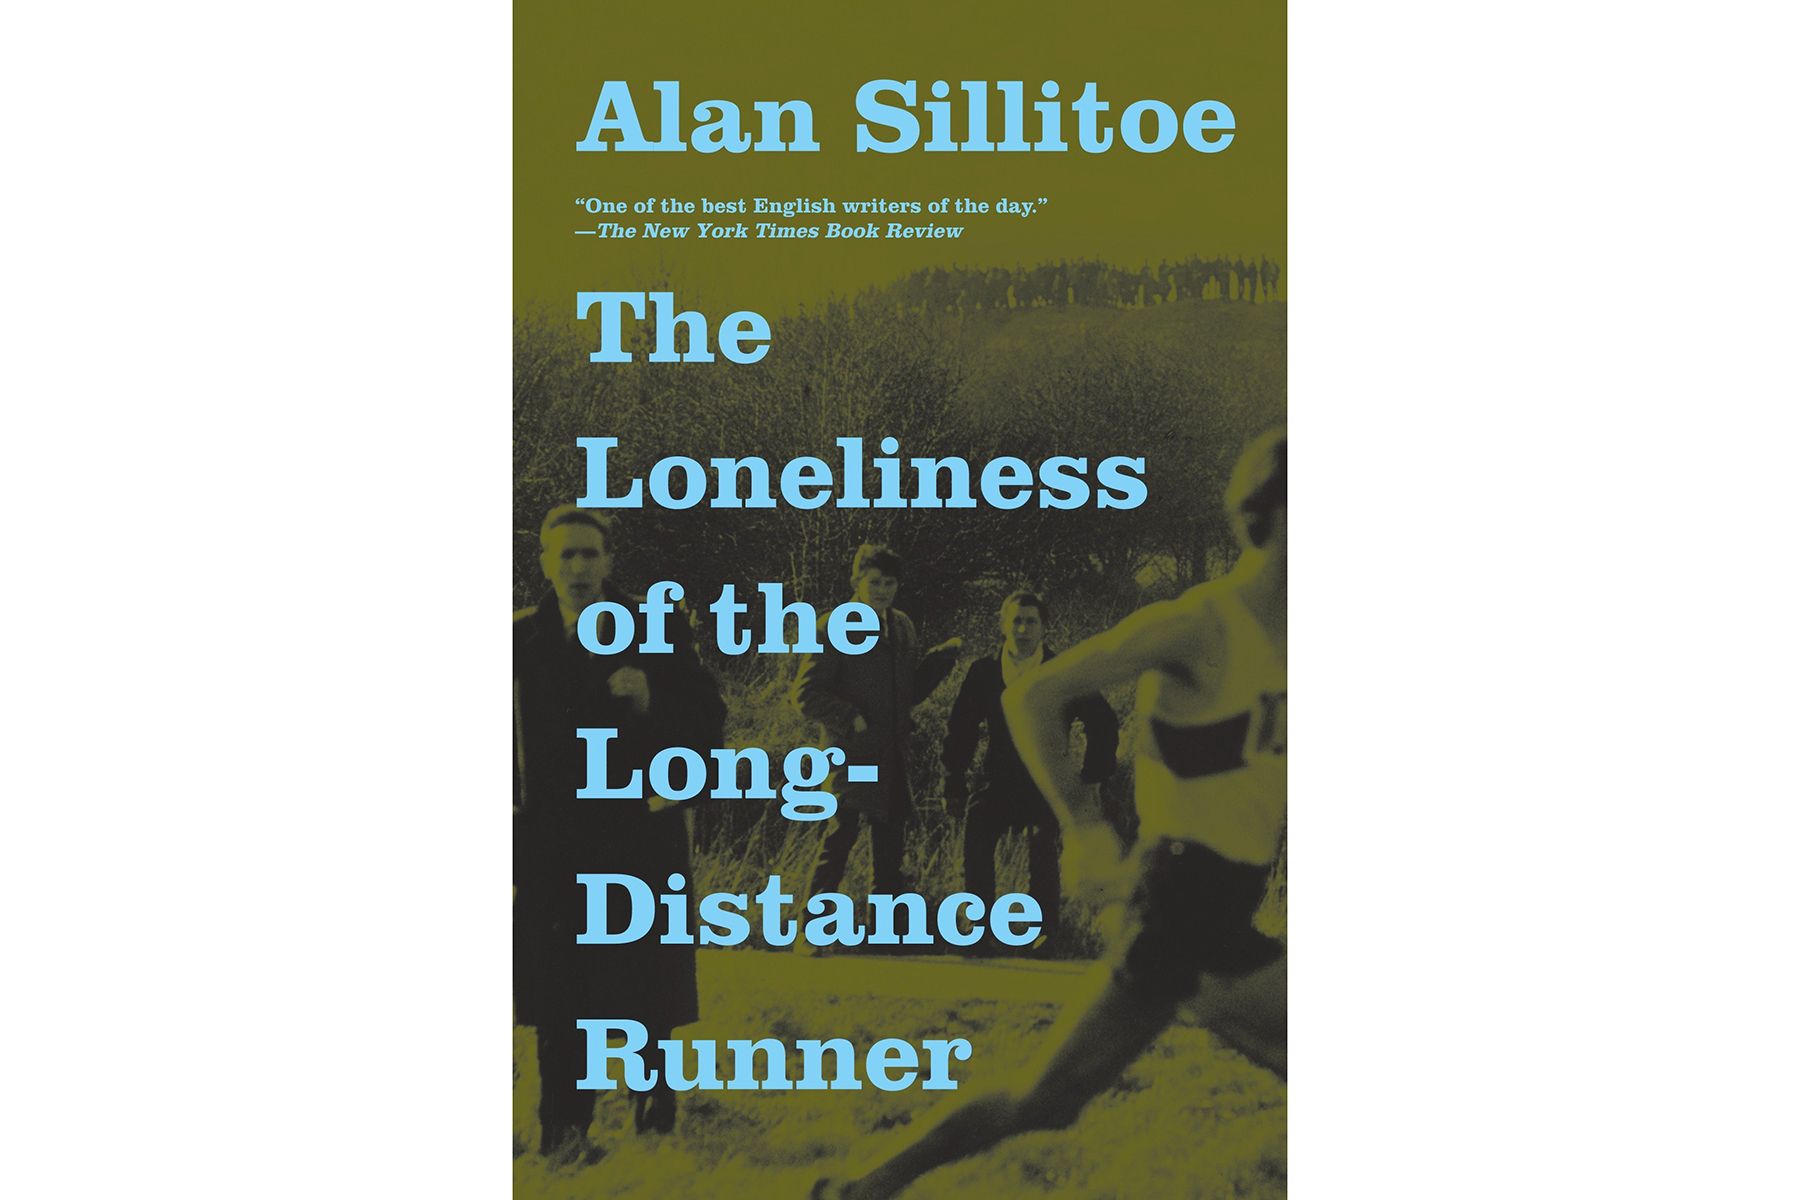 Alan Sillitoe tarafından yazılan Uzun Mesafe Koşucusunun Yalnızlığının Kapağı